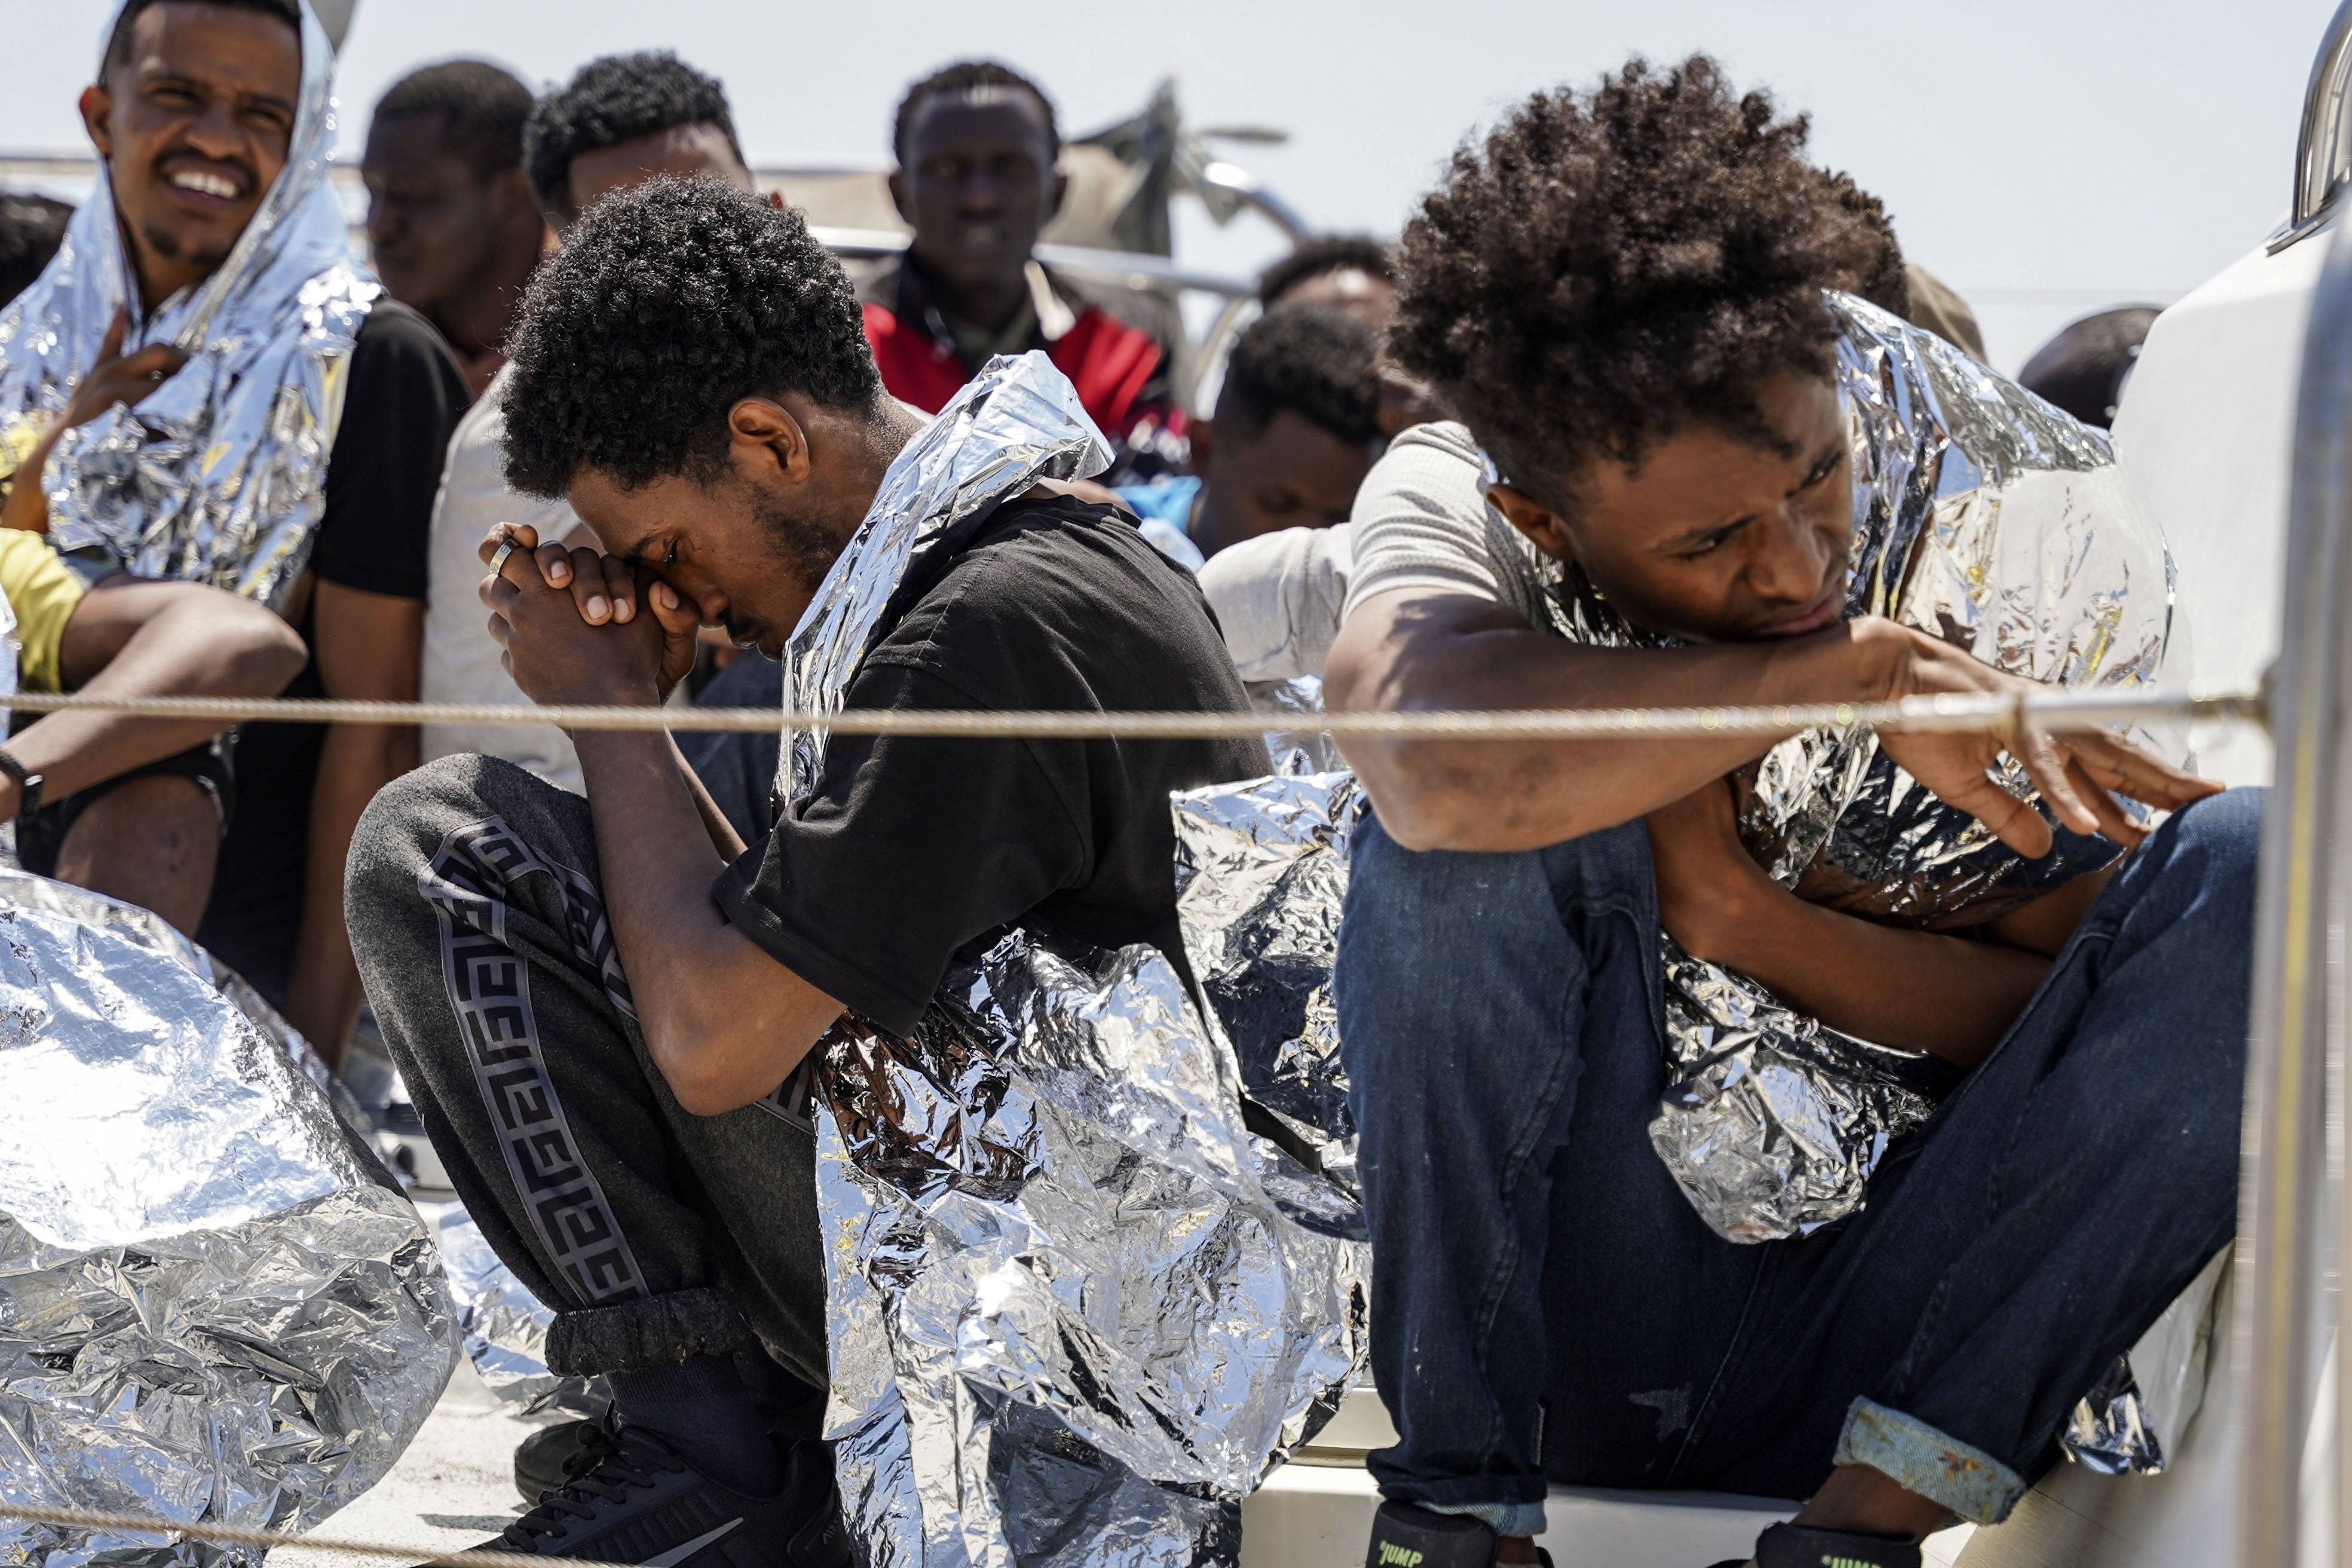 Pembela hak migran di Yunani diperlakukan seperti penjahat: Pakar PBB